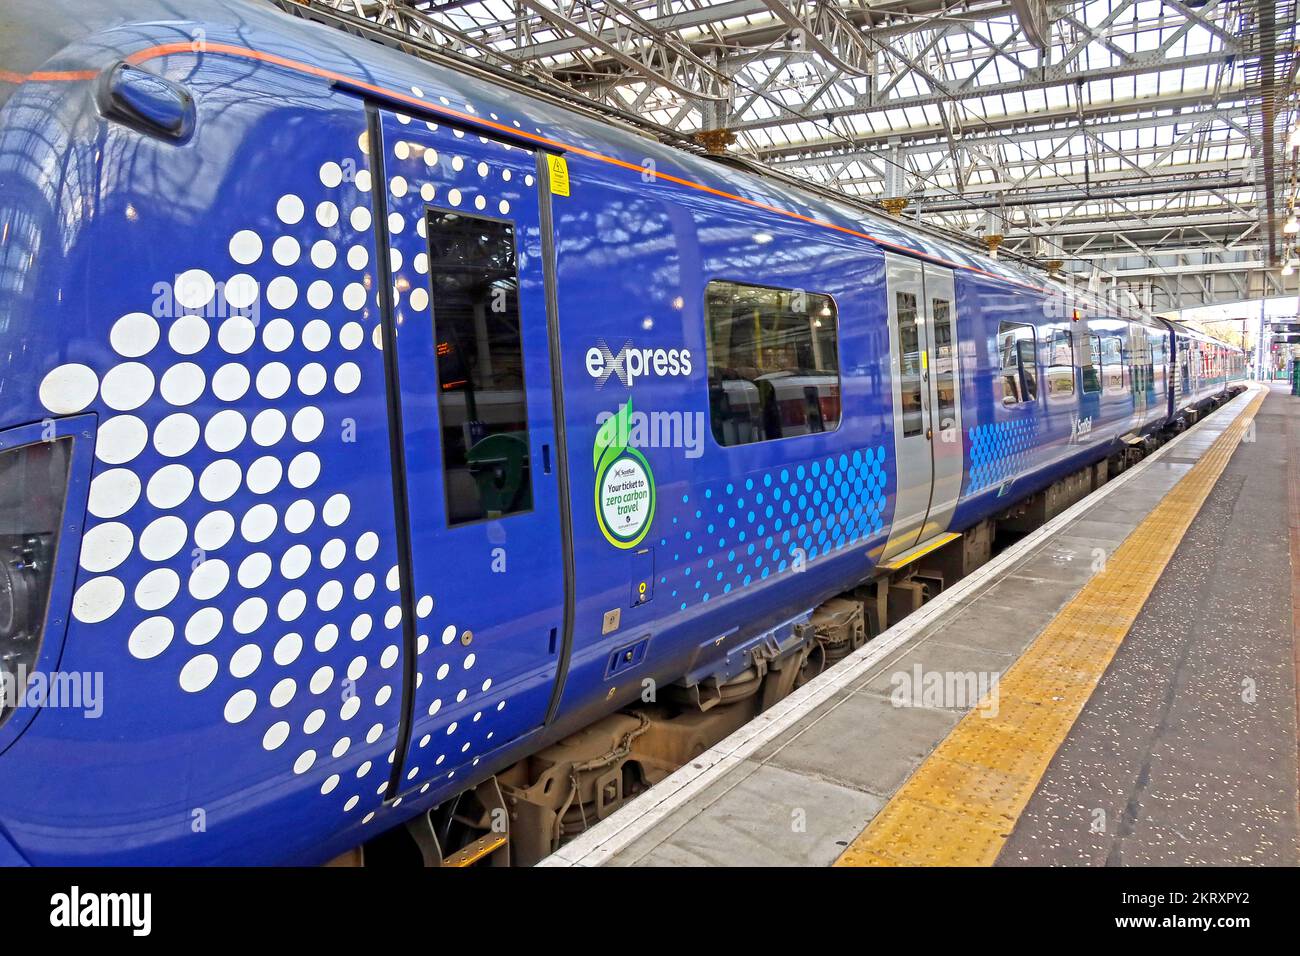 ScotRail Express, votre billet, pour un voyage zéro carbone, à la gare de Waverley, centre-ville d'Édimbourg, Écosse, Royaume-Uni, EH1 3EG Banque D'Images